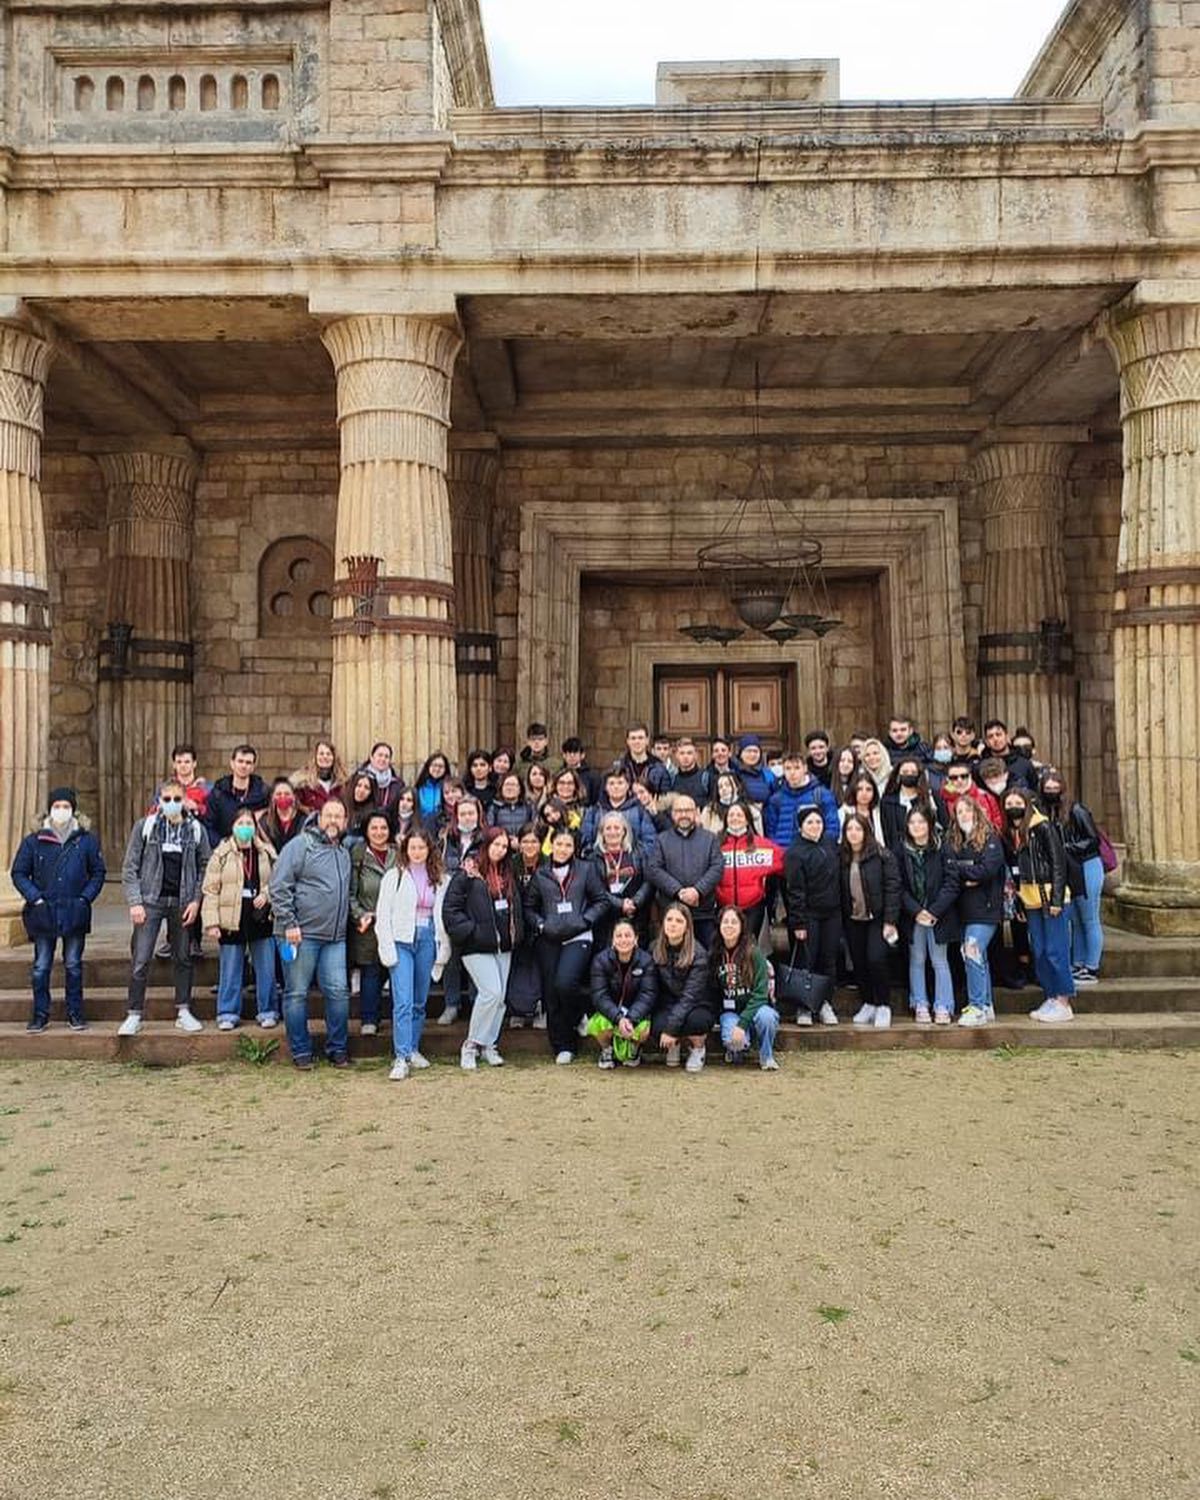 İtalyadaki Erasmus+ öğrencilerimiz gezilerine devam ediyor. Campania şehrindeki Caserta Sarayını ve Romadaki Cinecitta Sinema Müzesini ziyaret ettil